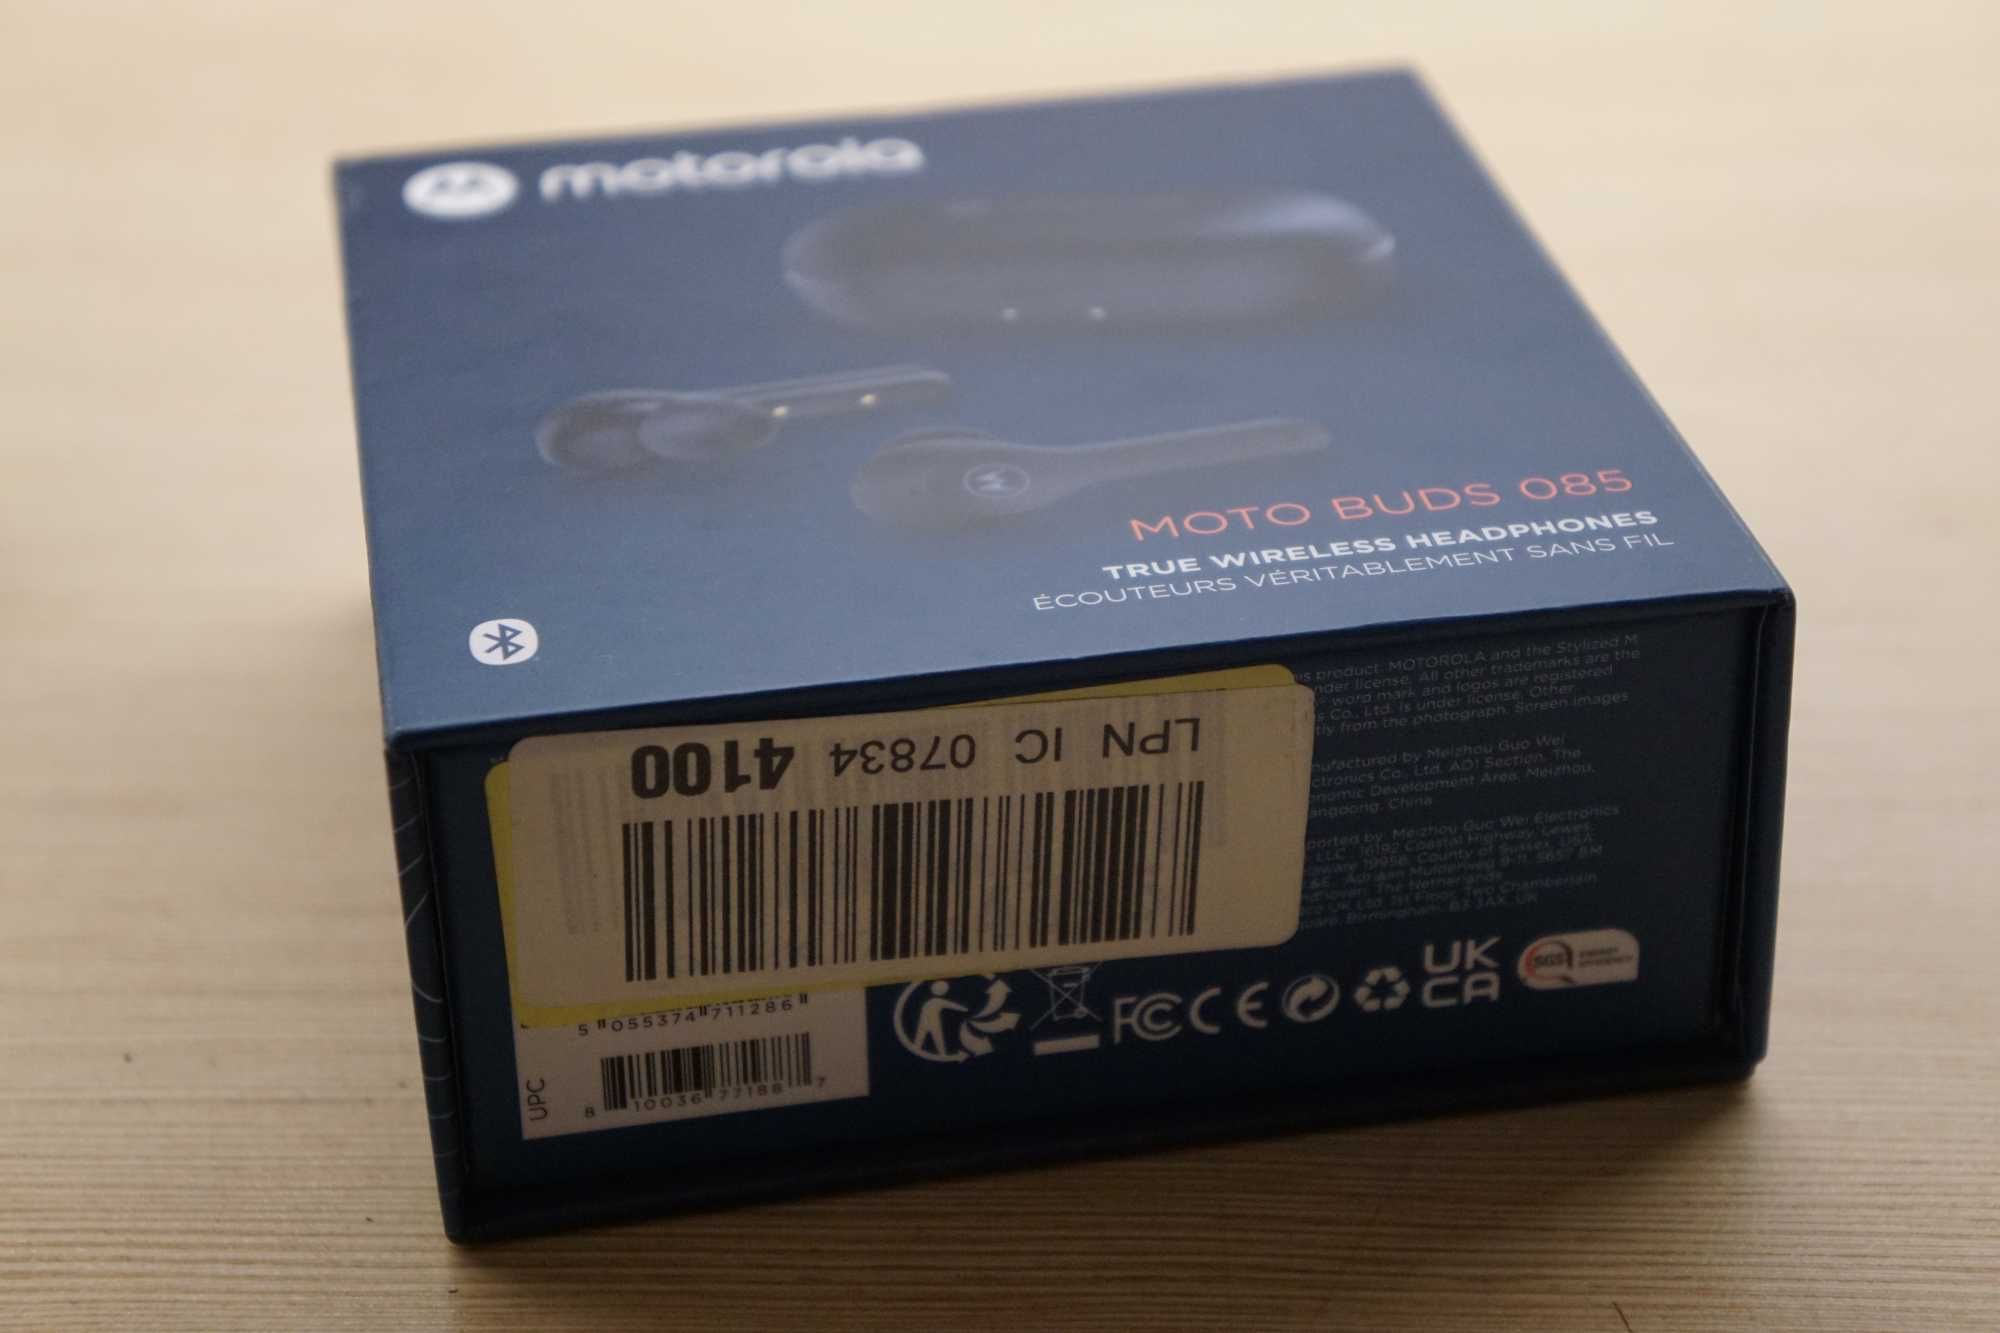 Słuchawki Motorola Moto Budz 085